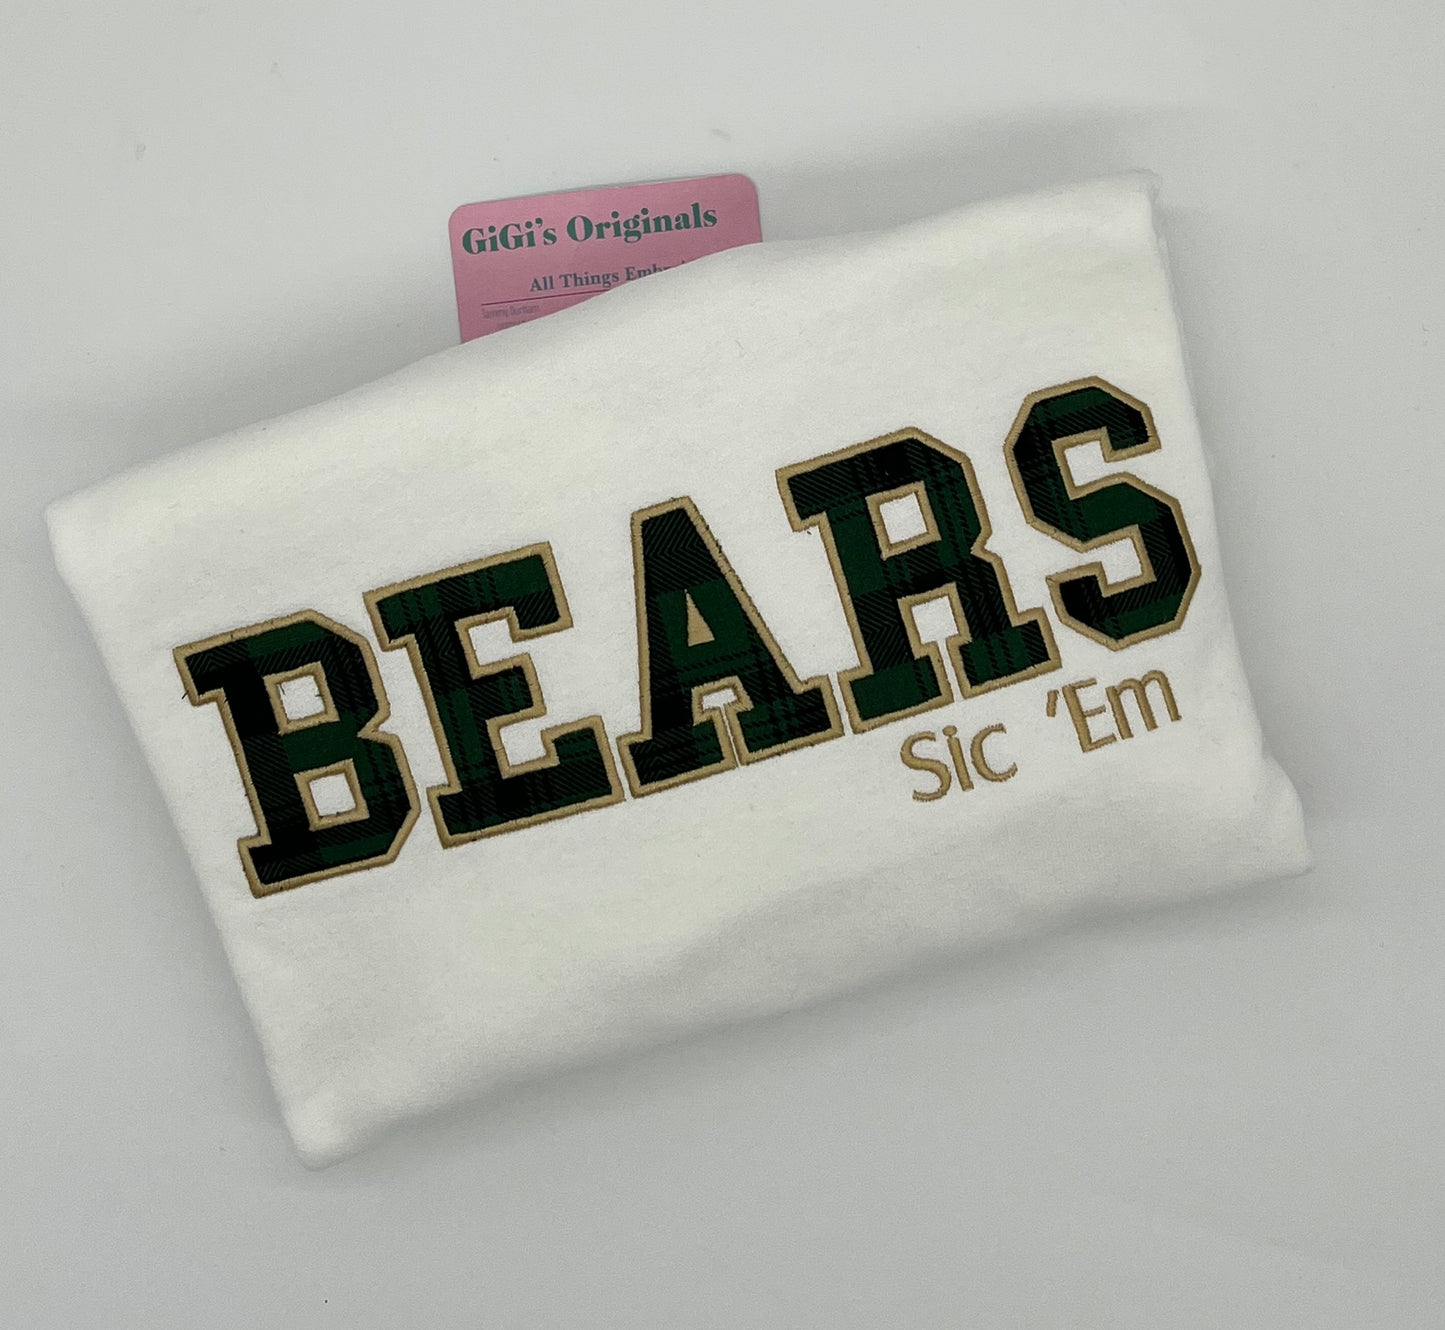 Baylor Bears Sweatshirt